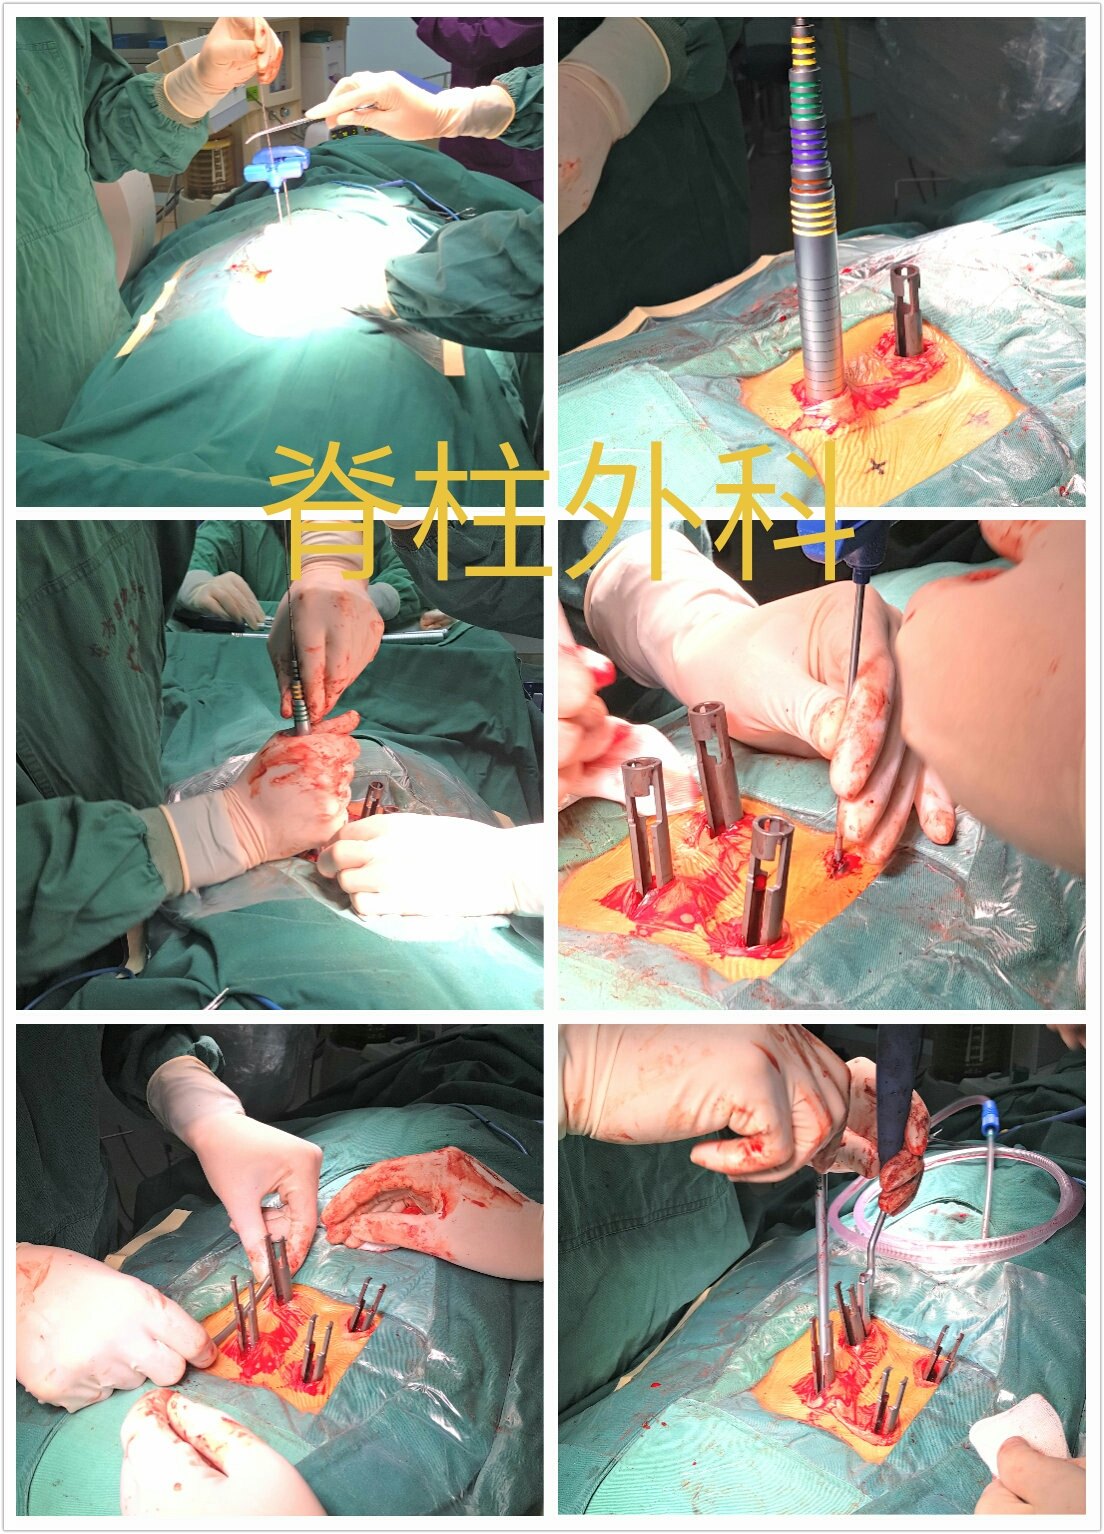 腰椎钉棒内固定术过程图片